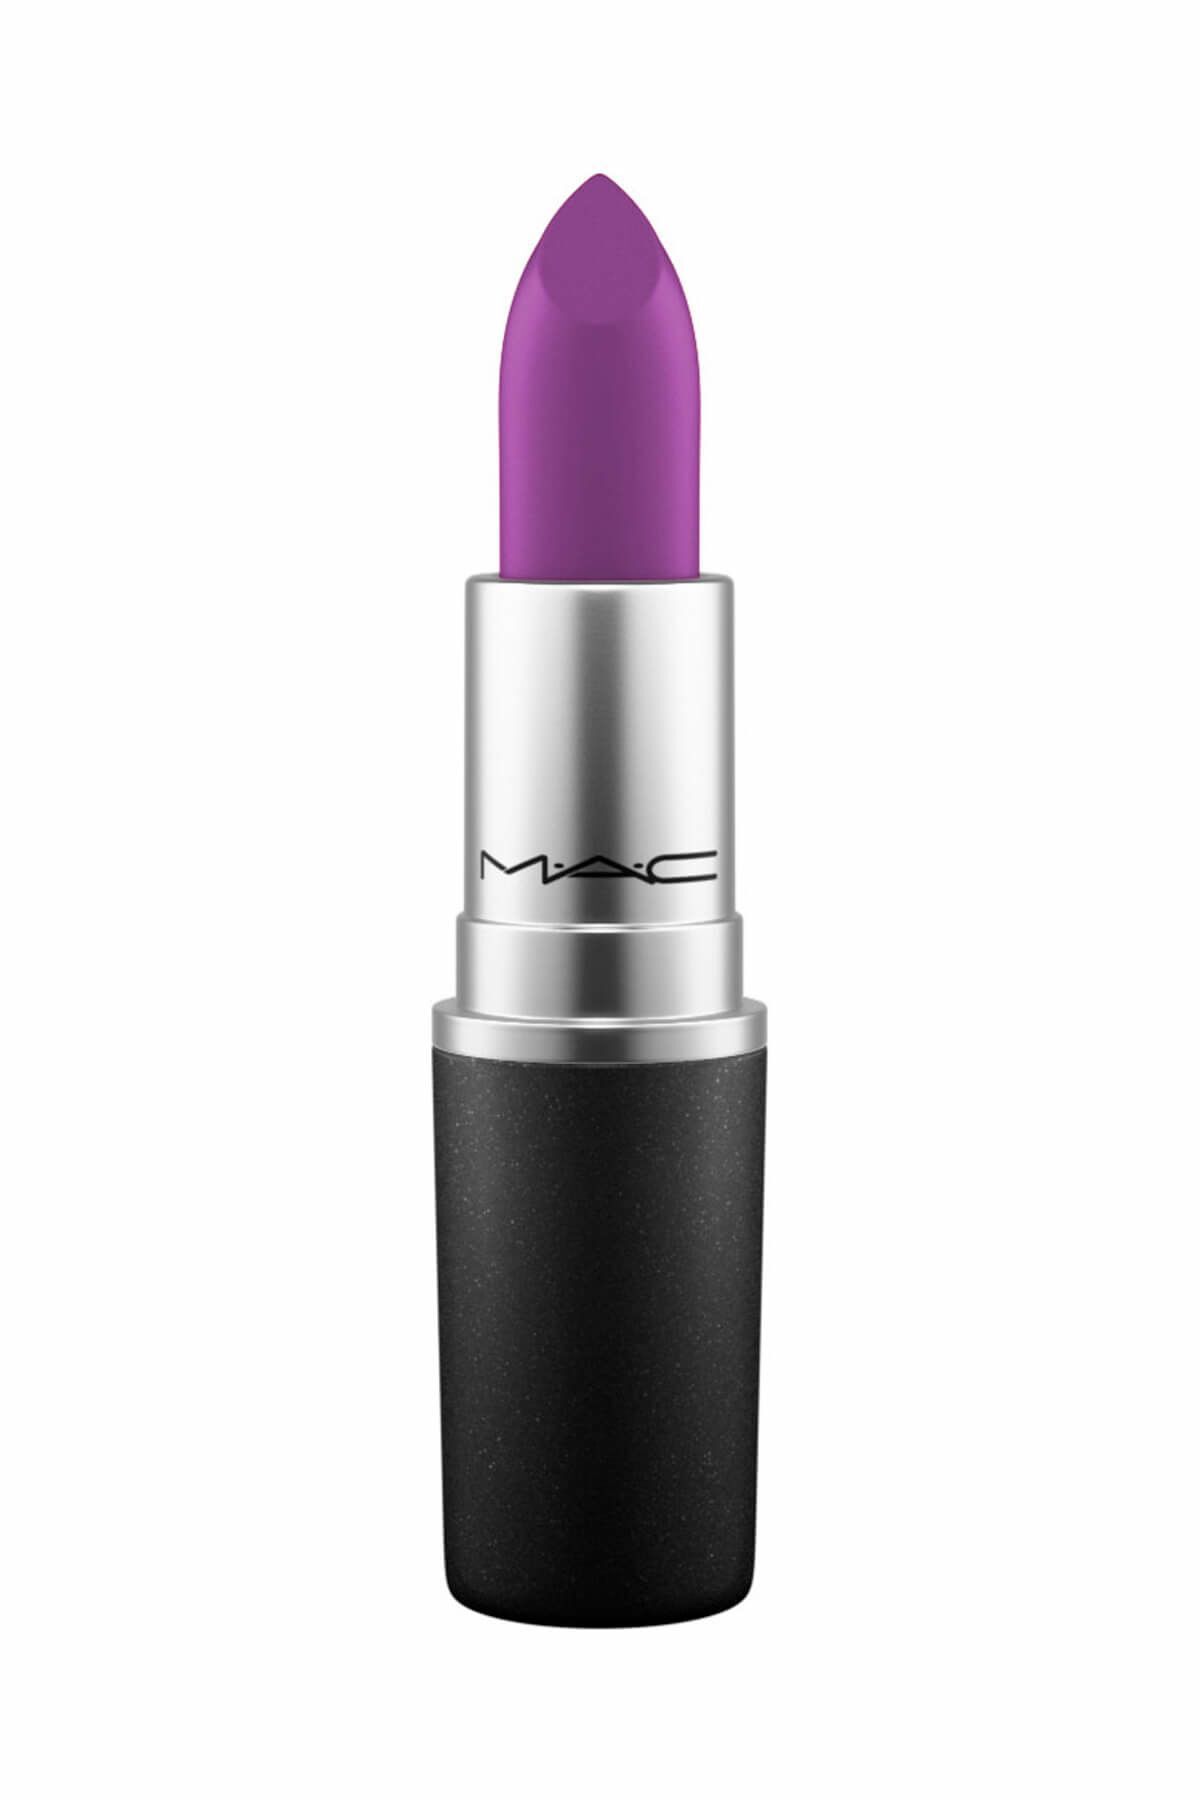 Mac Ruj - Lipstick Heroine 3 g 773602339891